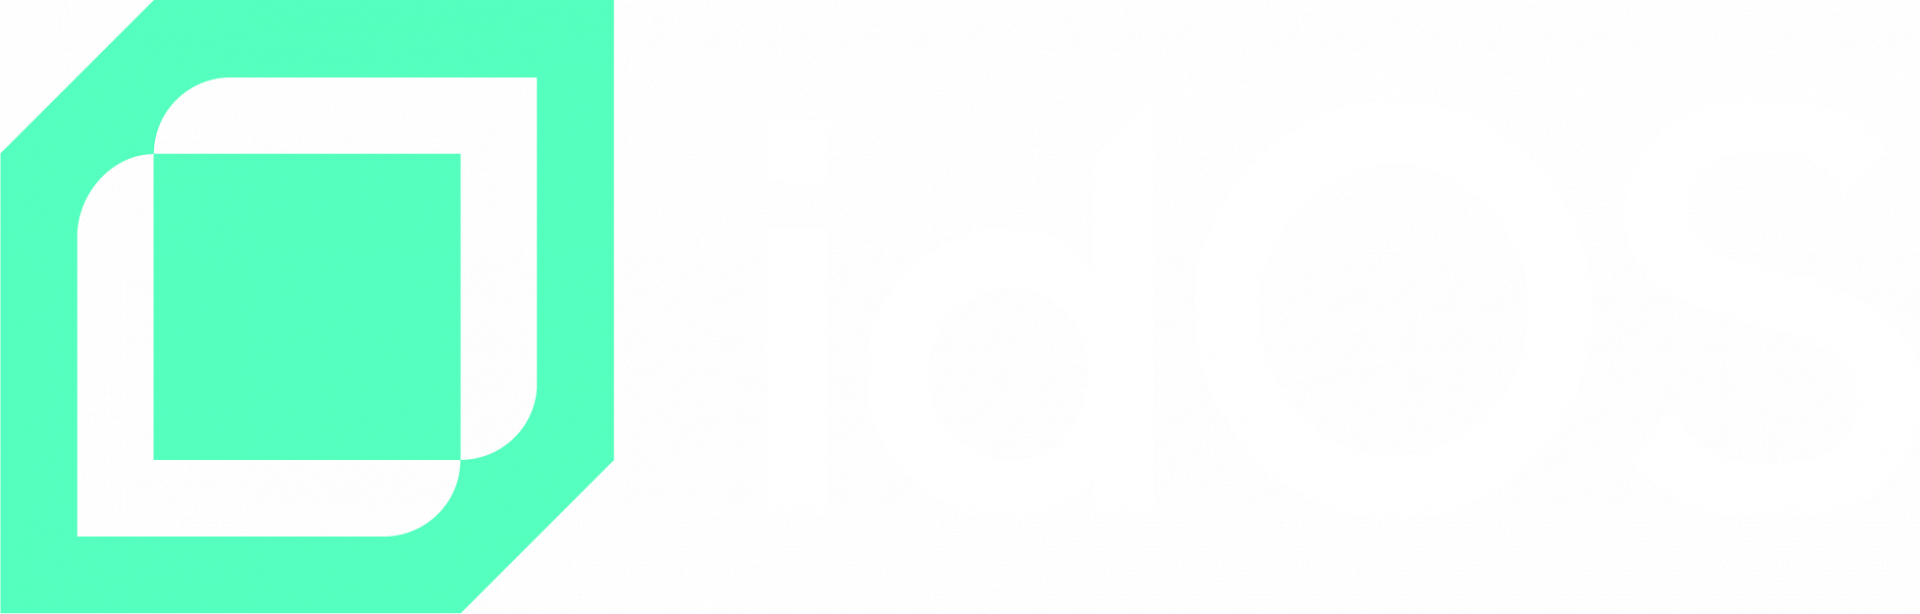 idOS - Aleph Zero: Public Blockchain with Private Smart Contracts